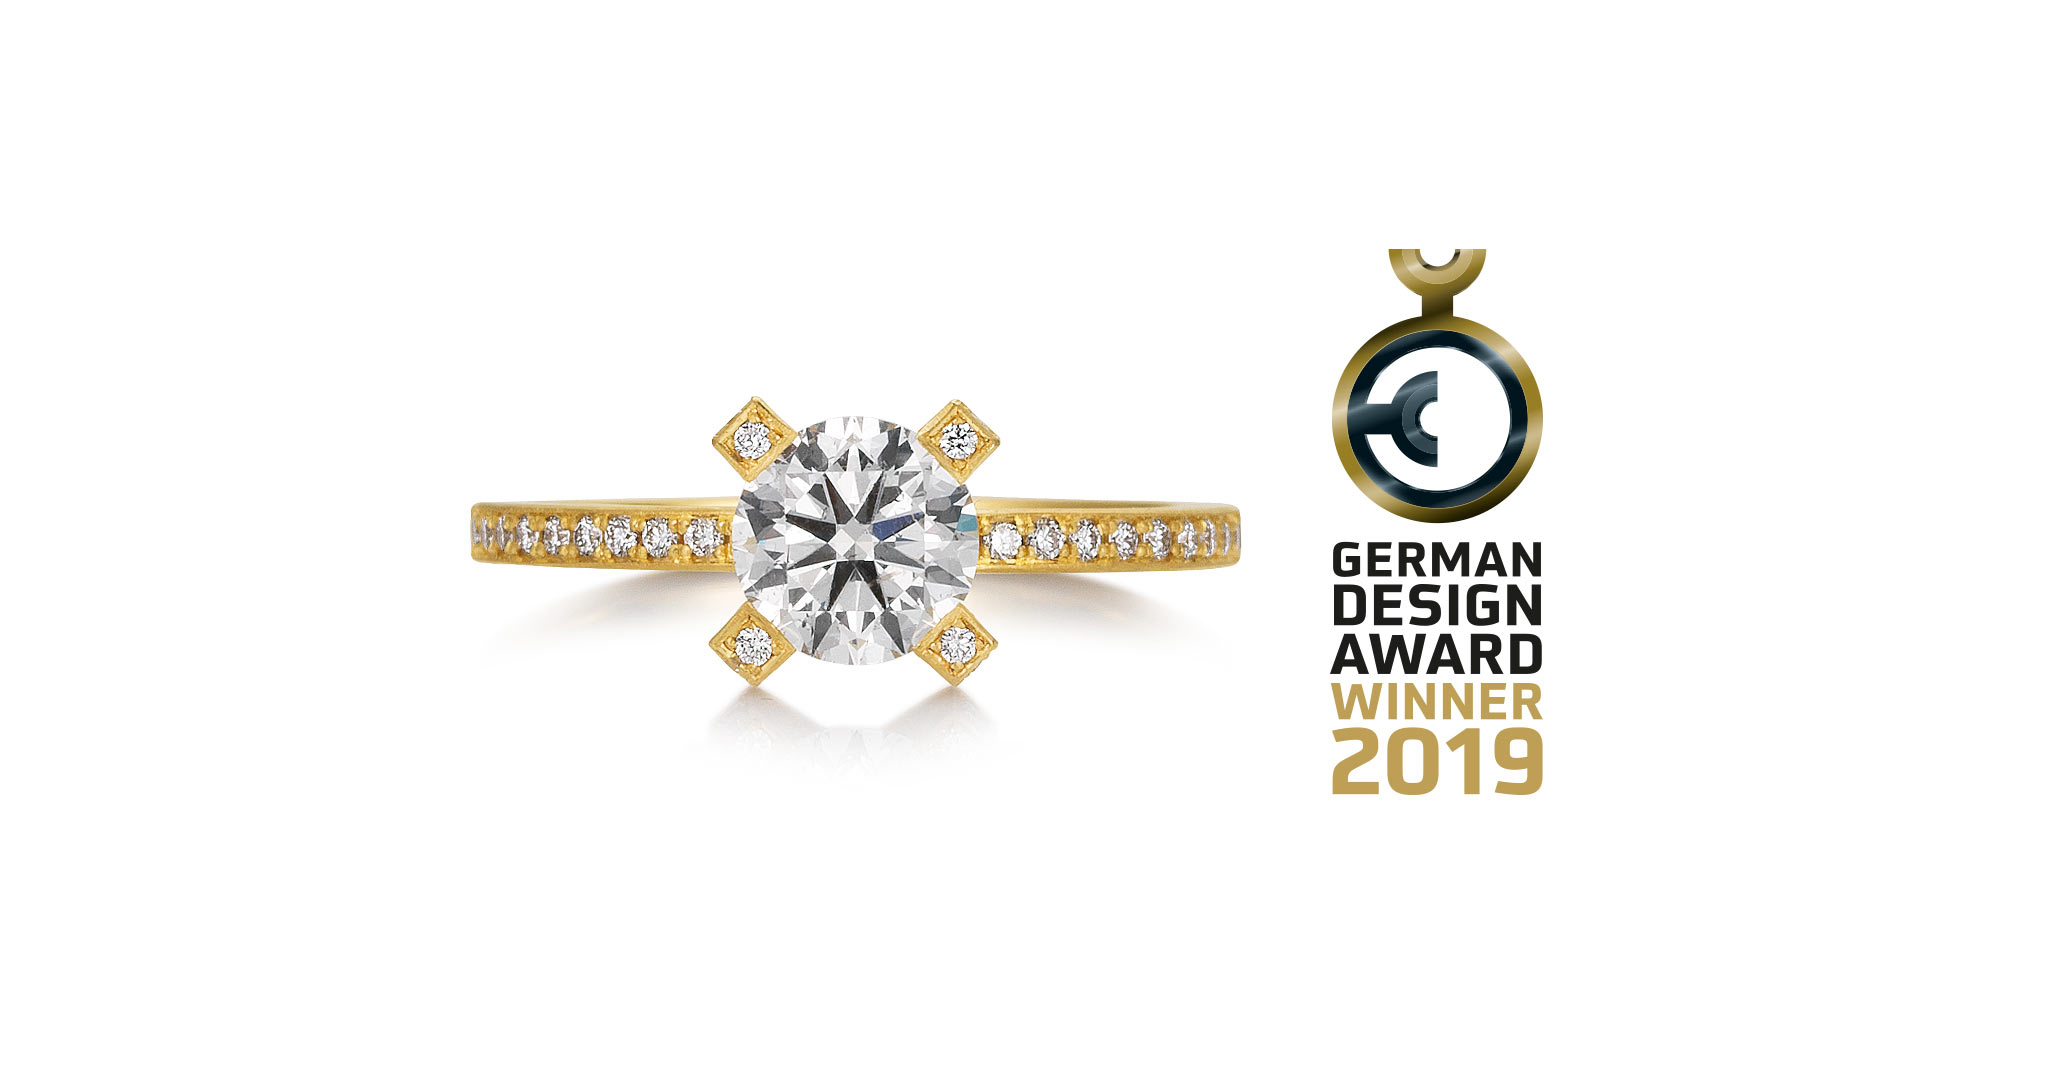 Marion Knorr wurde im Februar 2019 der German Design Award für das Solitaire-Design „Perseus" verliehen. Begründung: Eine wunderbare Inszenierung des Materials, die großen Eindruck macht.